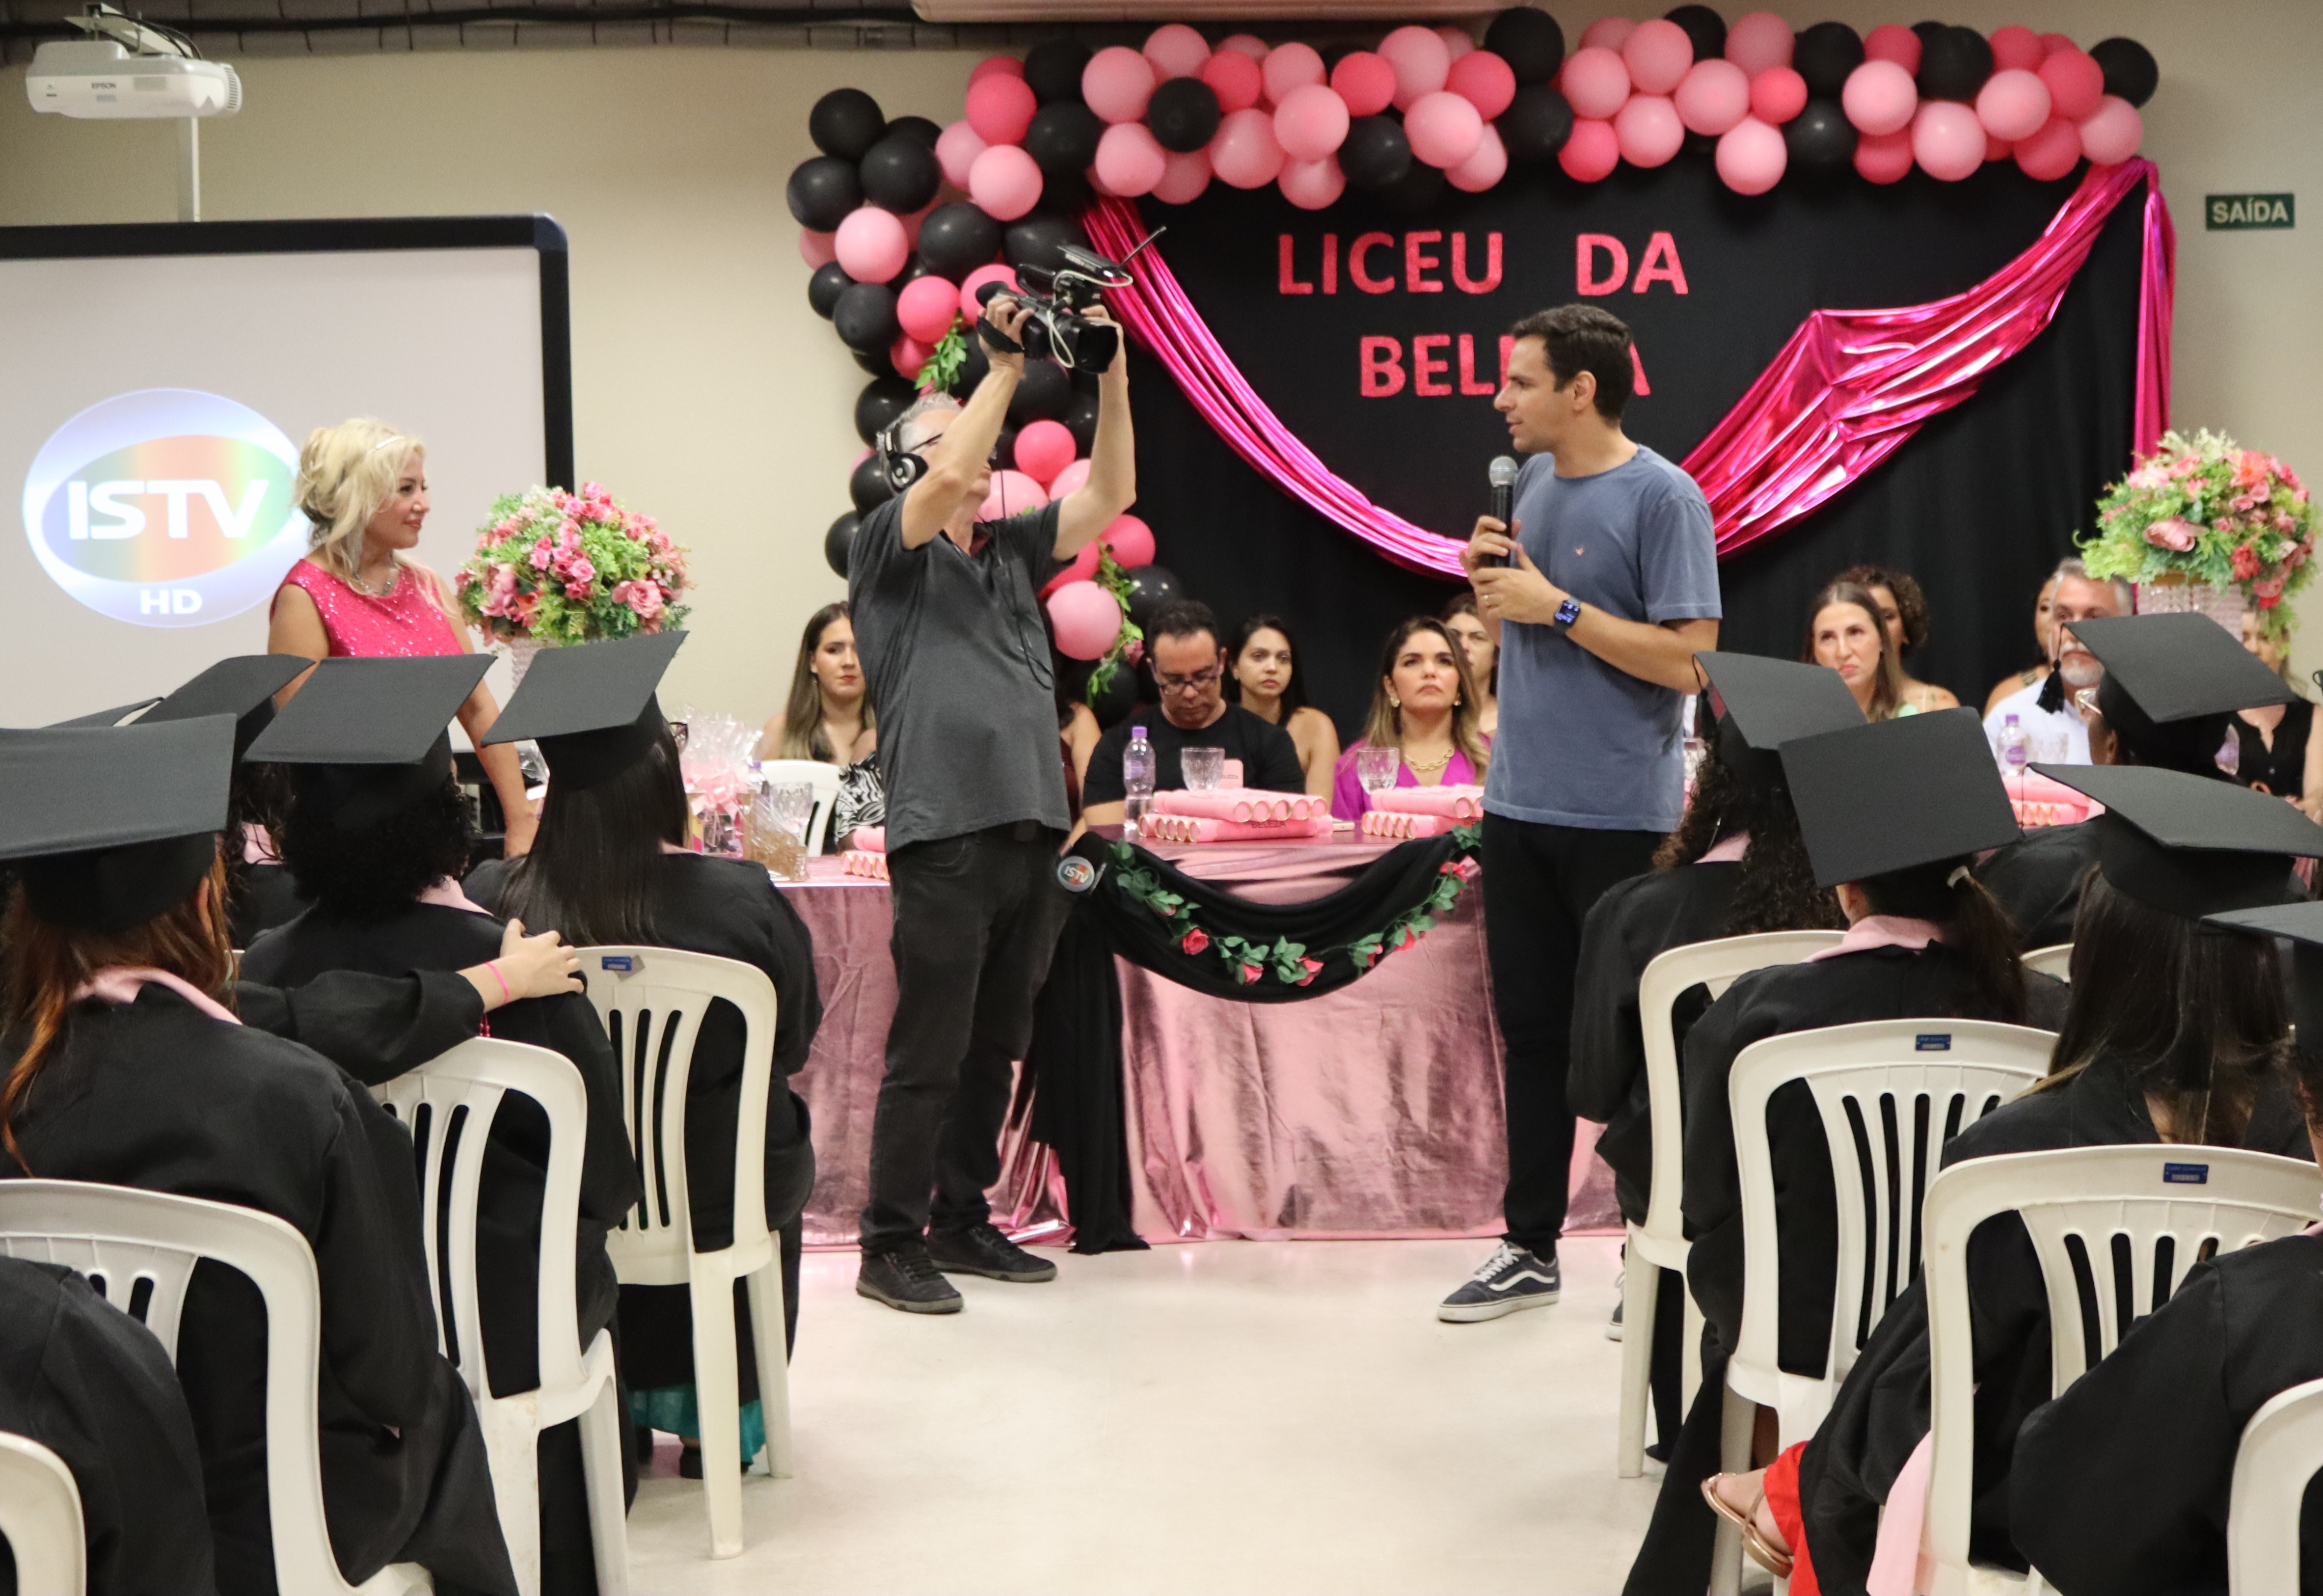 Cris Lopes e Liceu da Beleza reúnem 250 pessoas em formatura